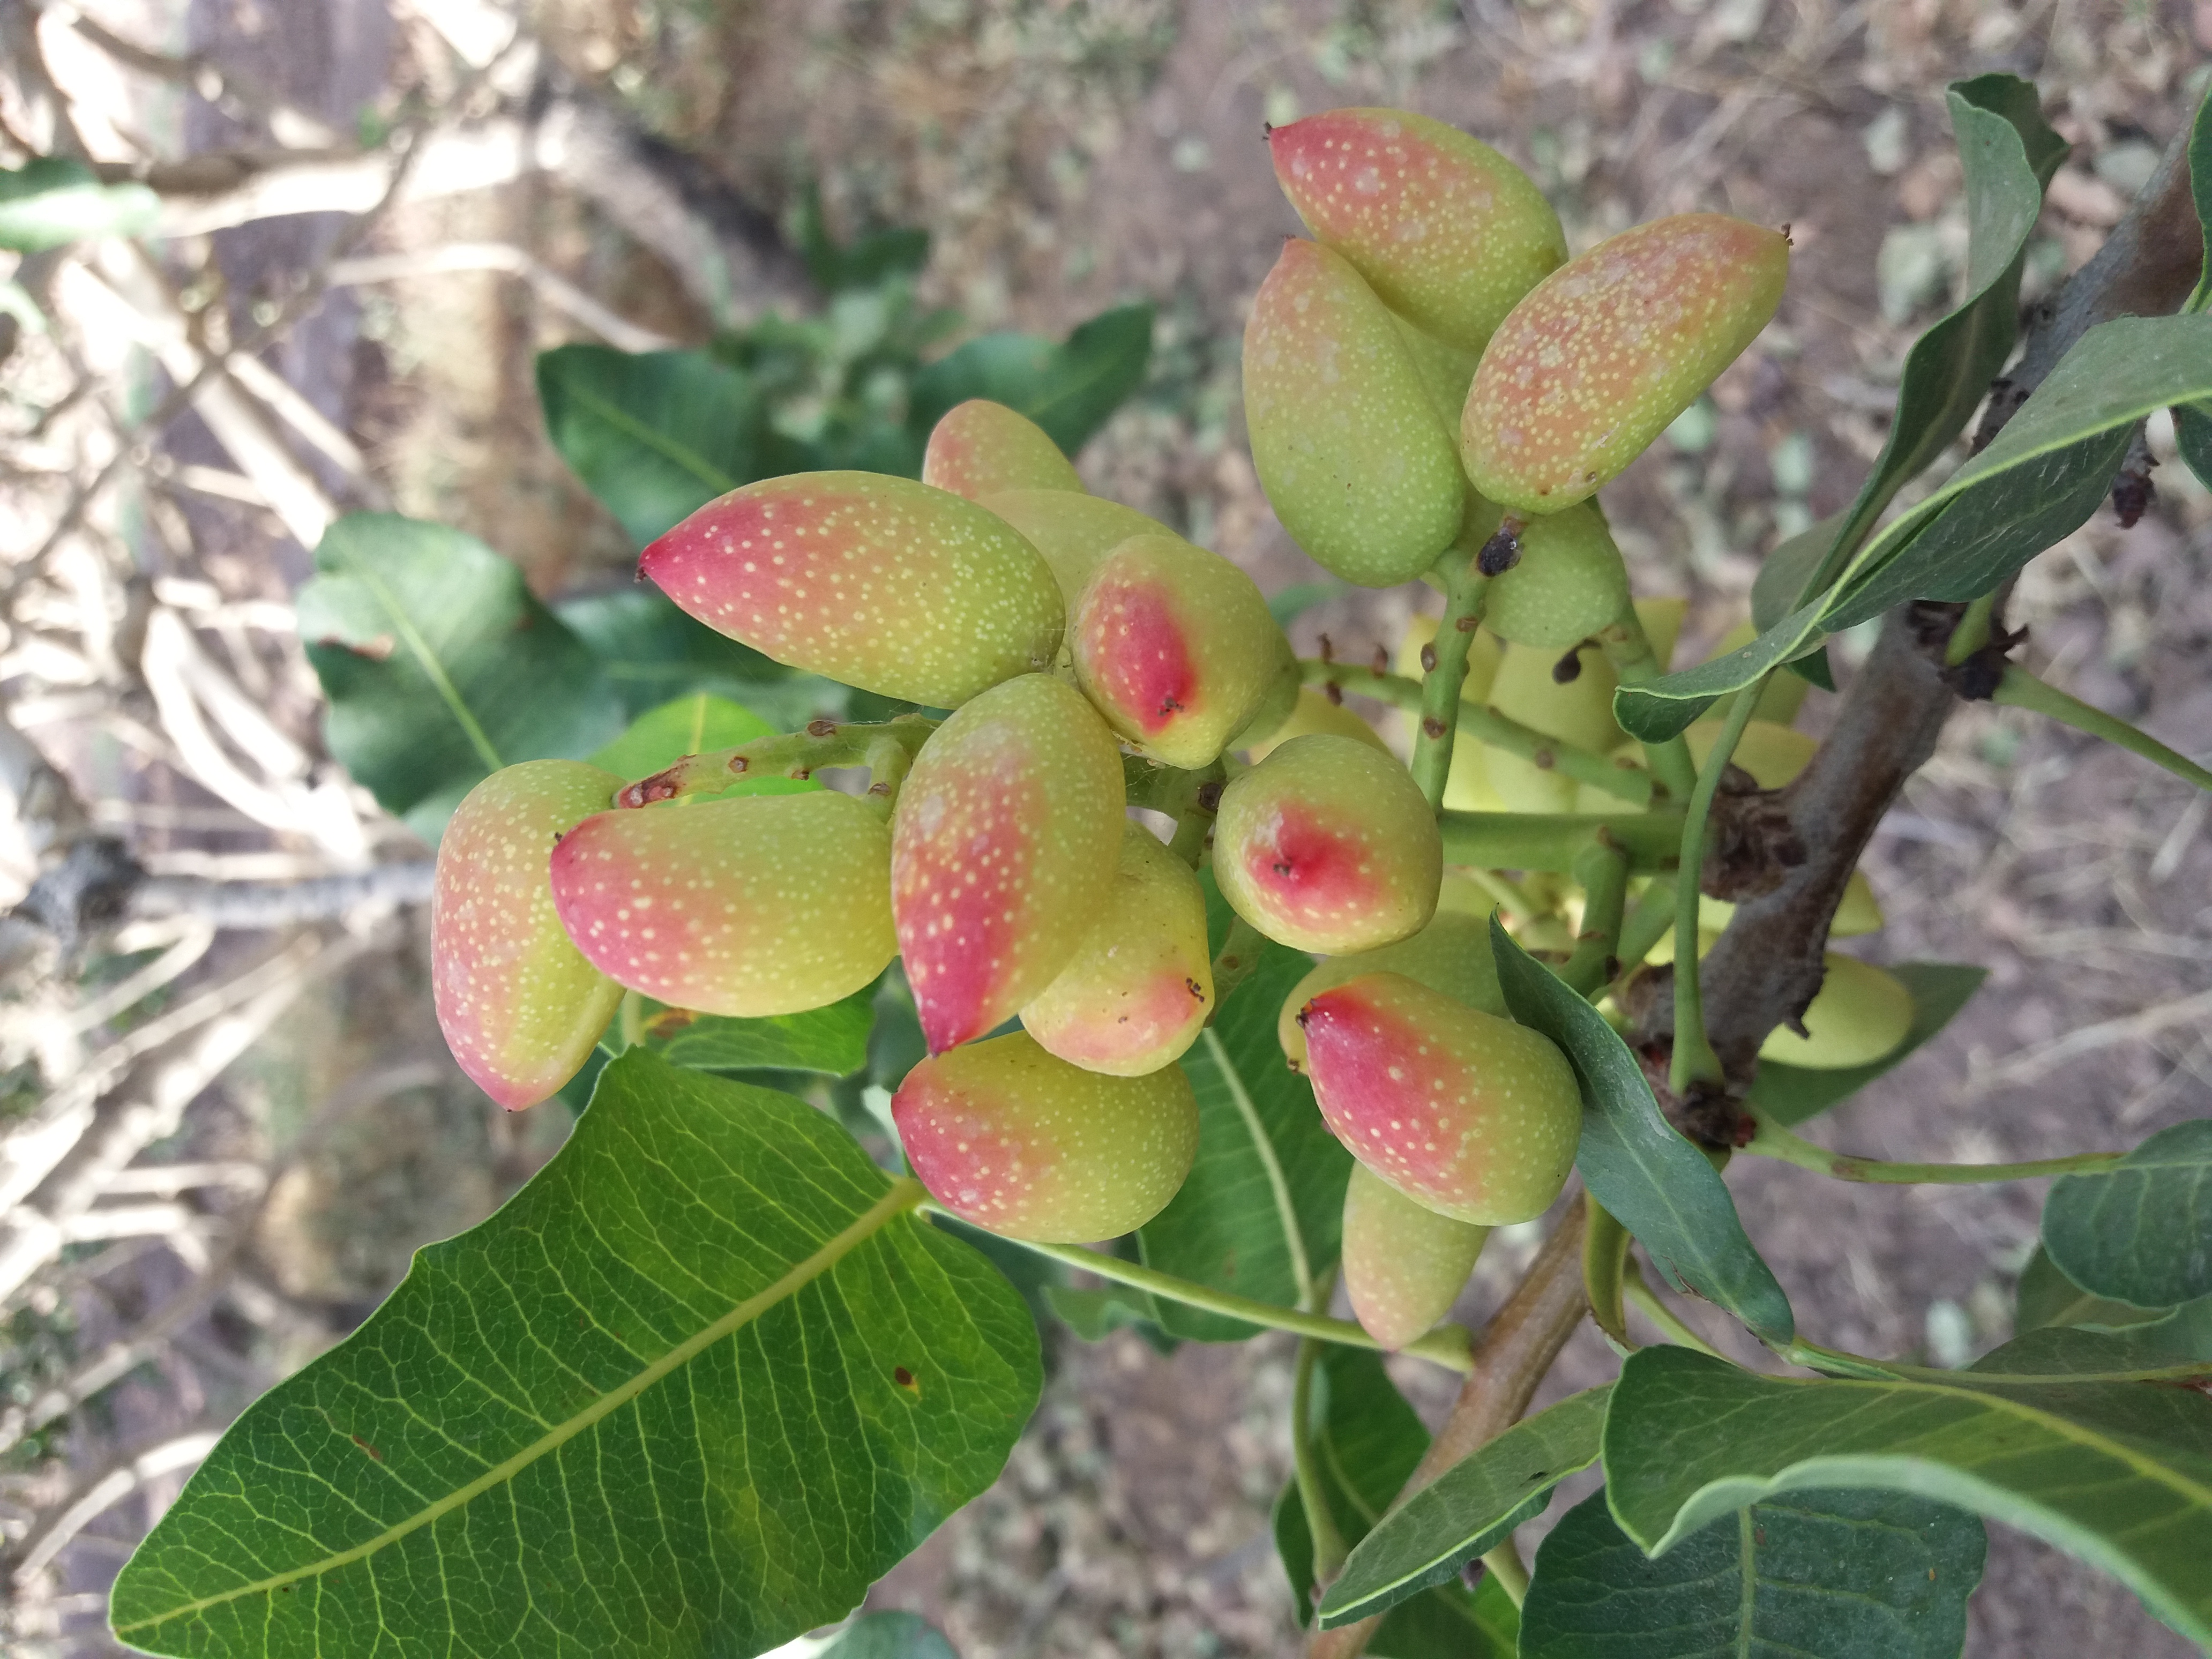 Healthy pistachios